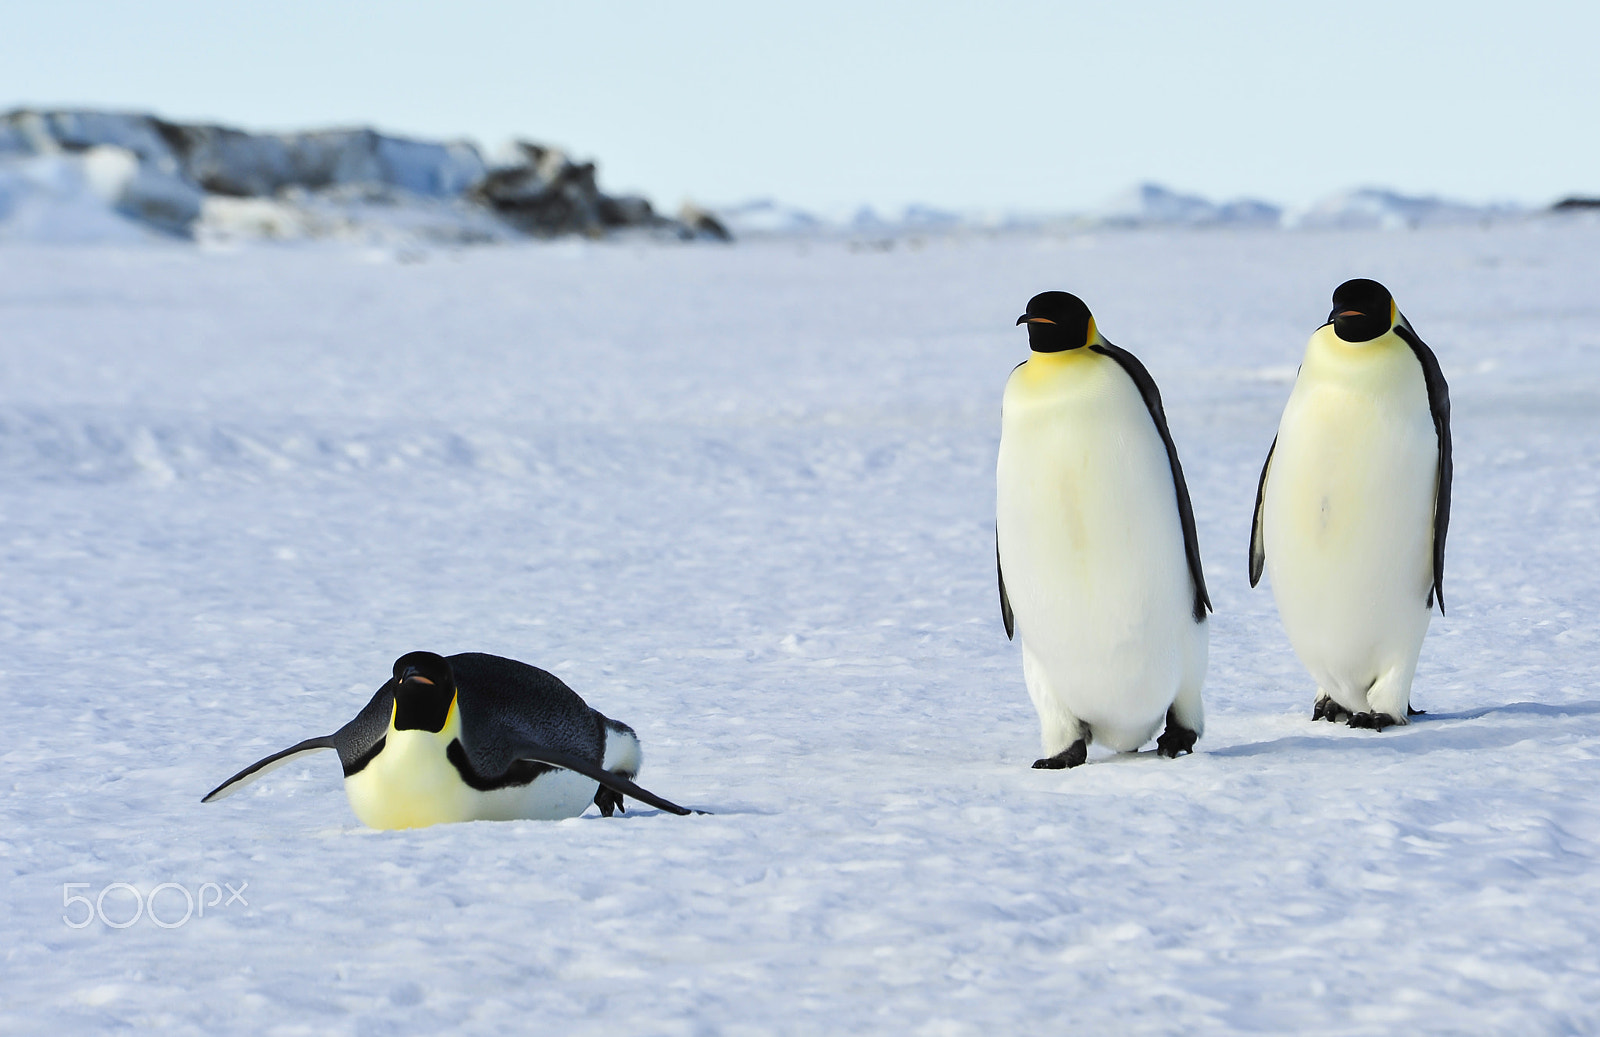 Nikon D700 + Nikon AF Nikkor 80-400mm F4.5-5.6D ED VR sample photo. Three emperor penguins on the snow photography